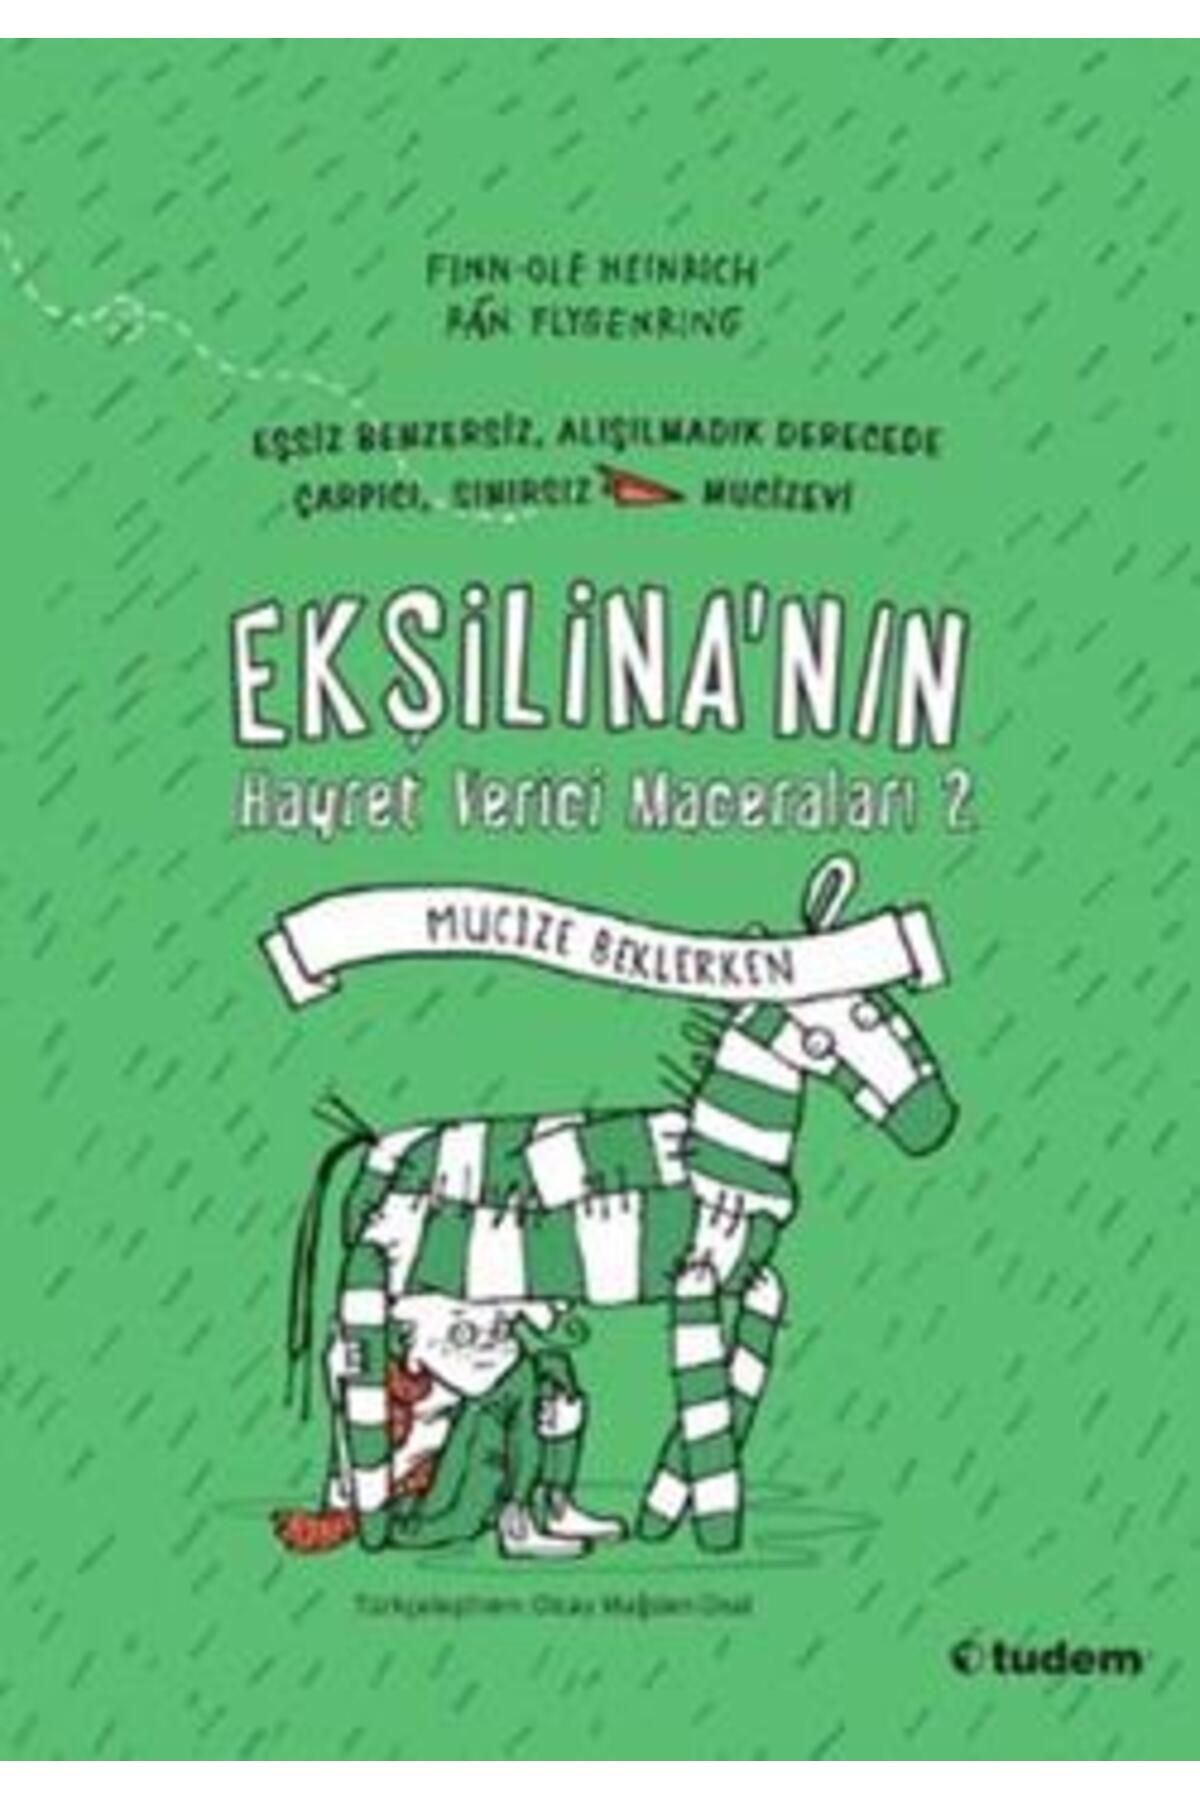 Tudem Yayınları Ekşilina'nın Hayret Verici Maceraları 2: Mucize Beklerken kitabı - Finn-Ole Heinrich - Tudem Yayınla